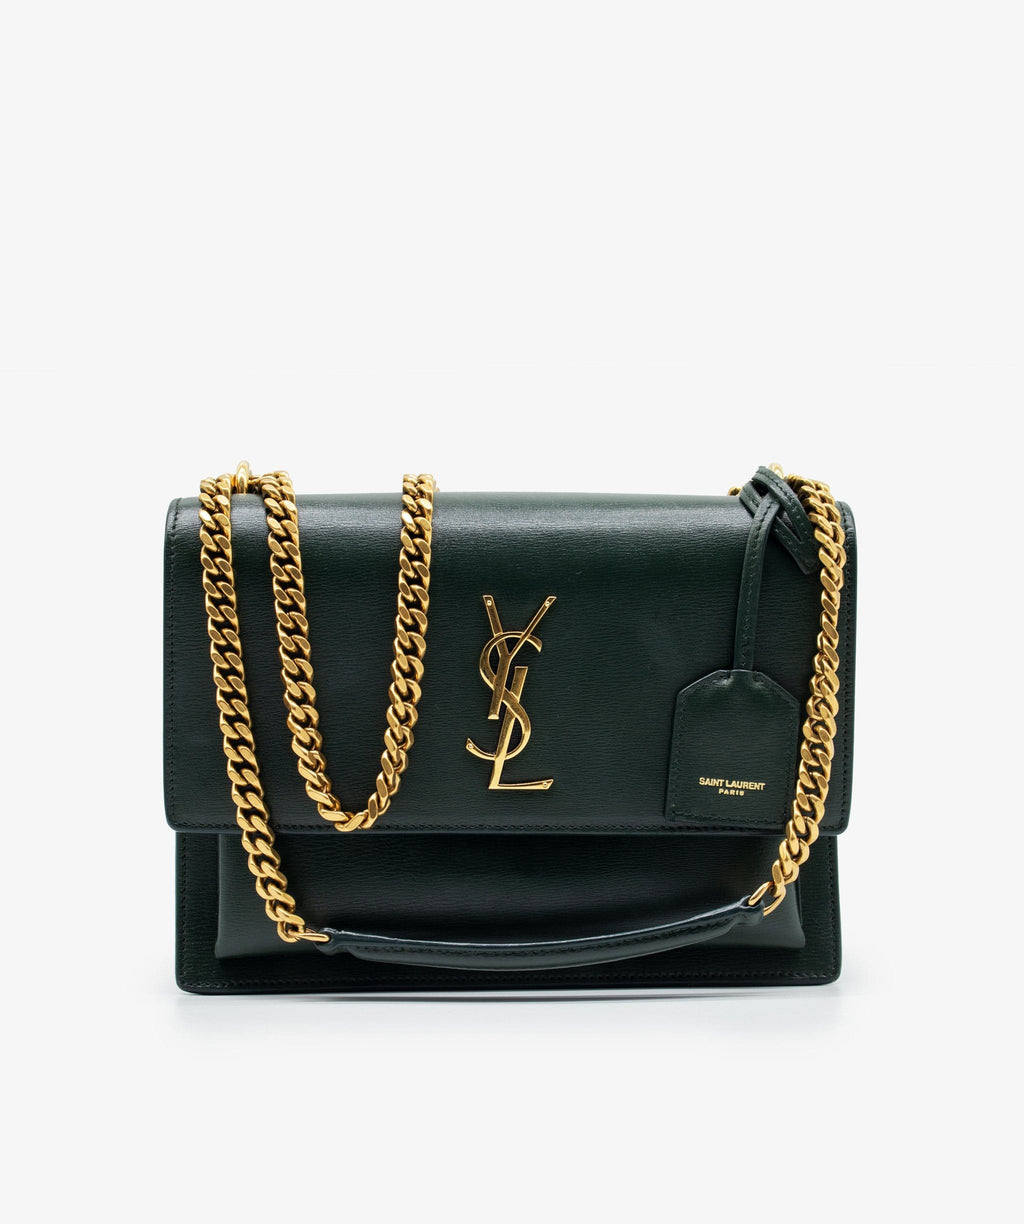 Yves saint laurent green bag